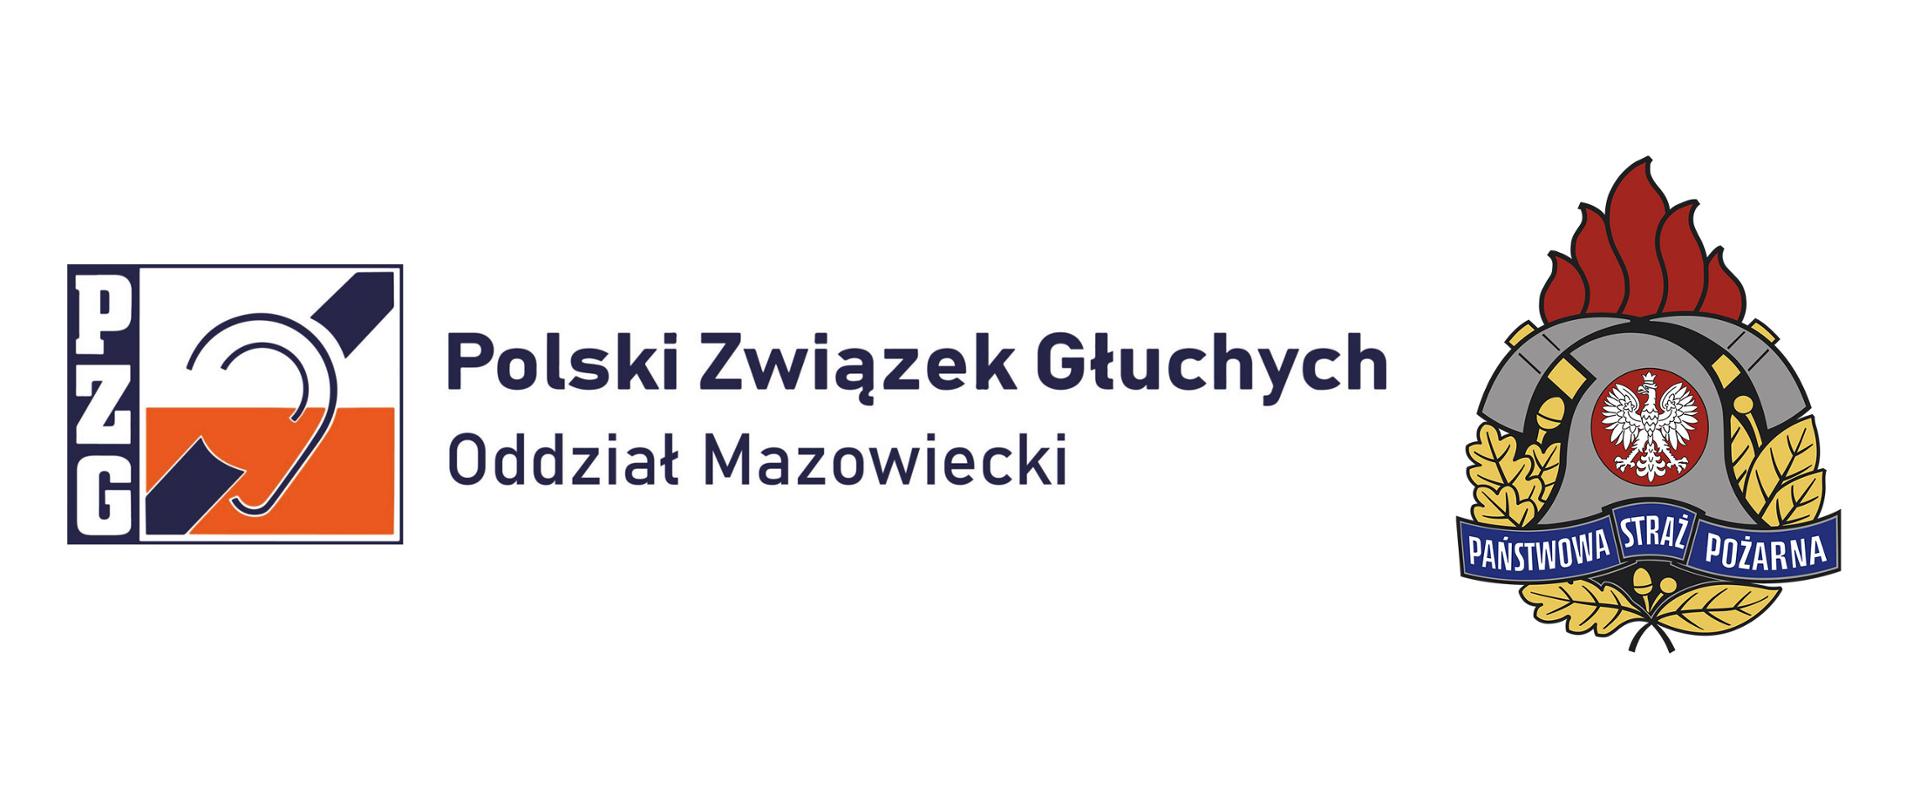 baner z napisem Polski Związek Głuchych Oddział Mazowiecki PZG oraz logo PSP